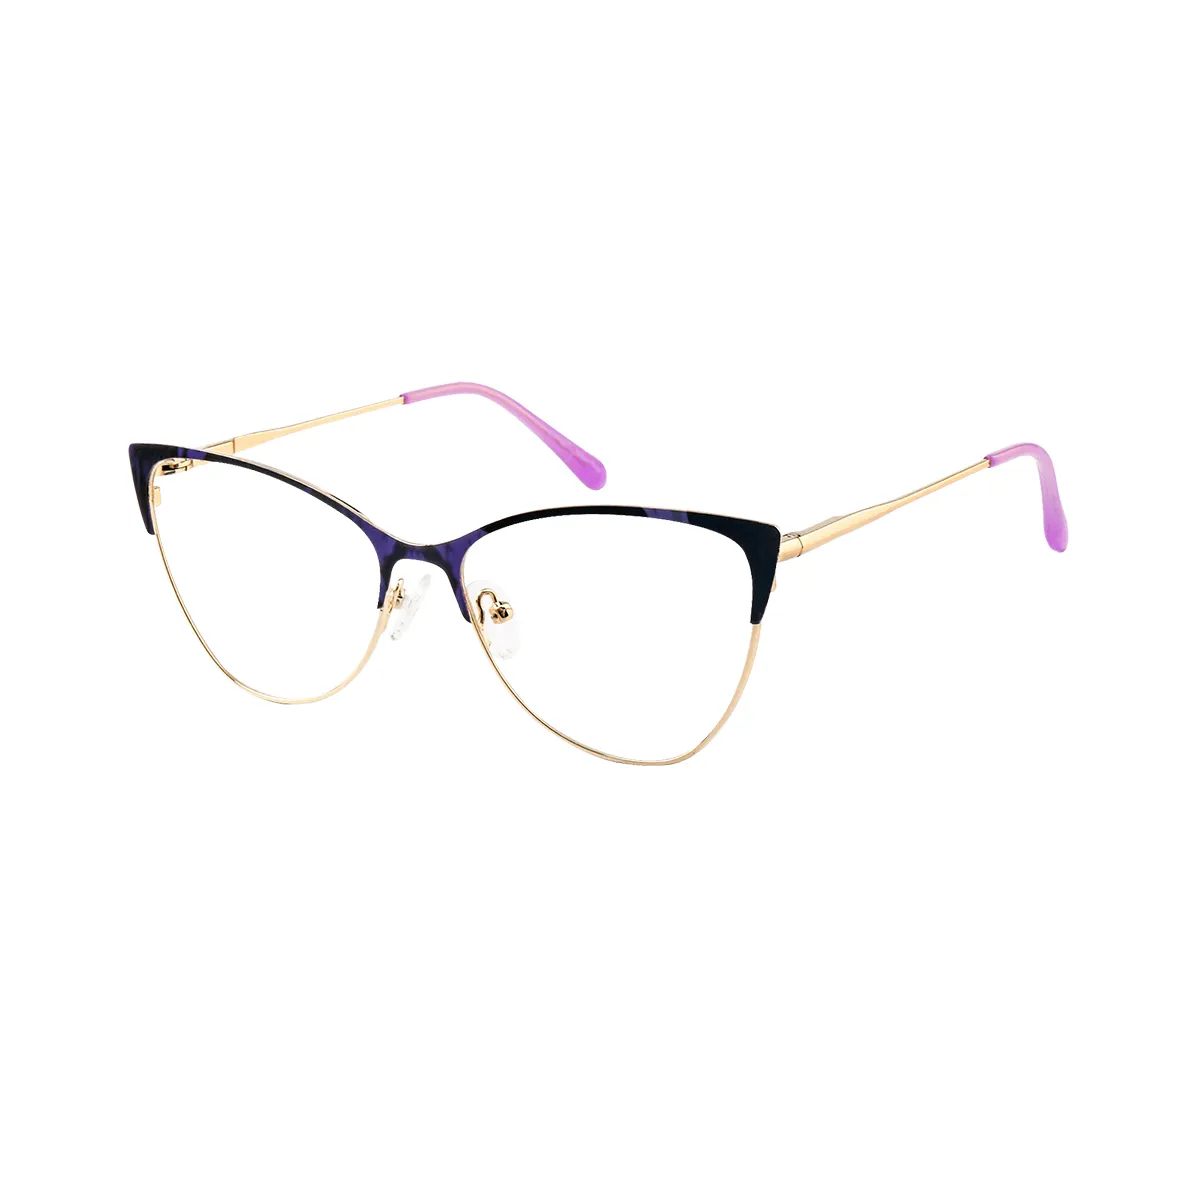 Nicola - Cat-eye Blue Glasses for Women - EFE